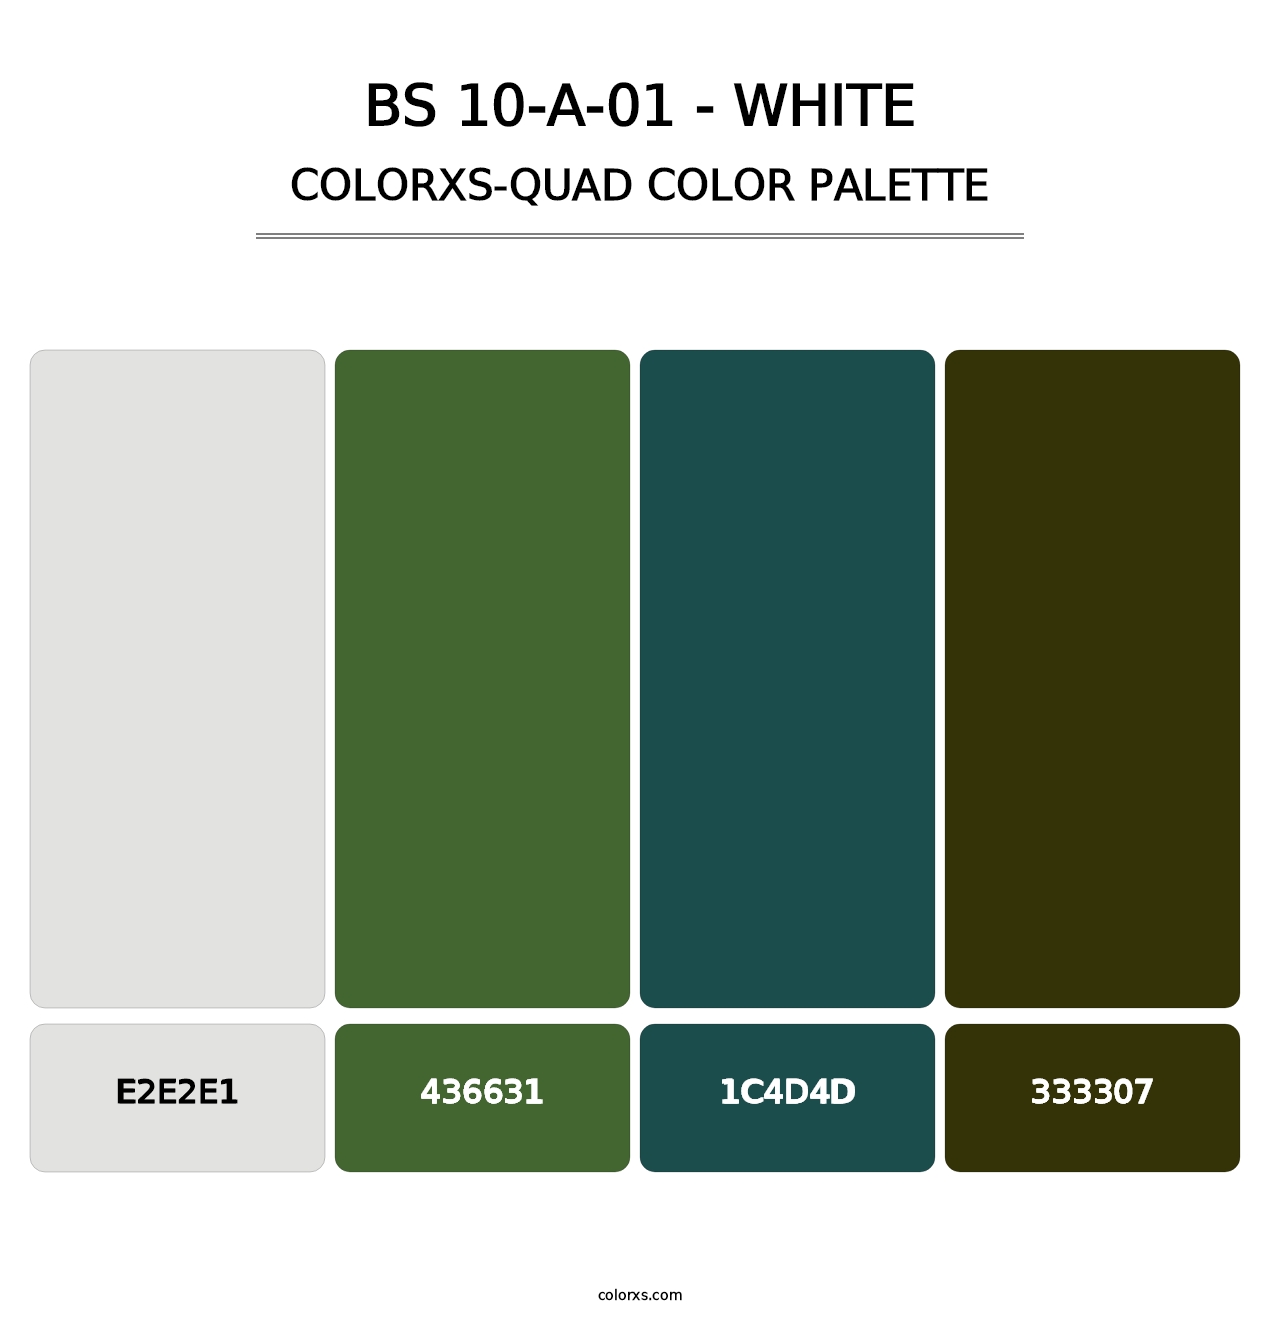 BS 10-A-01 - White - Colorxs Quad Palette